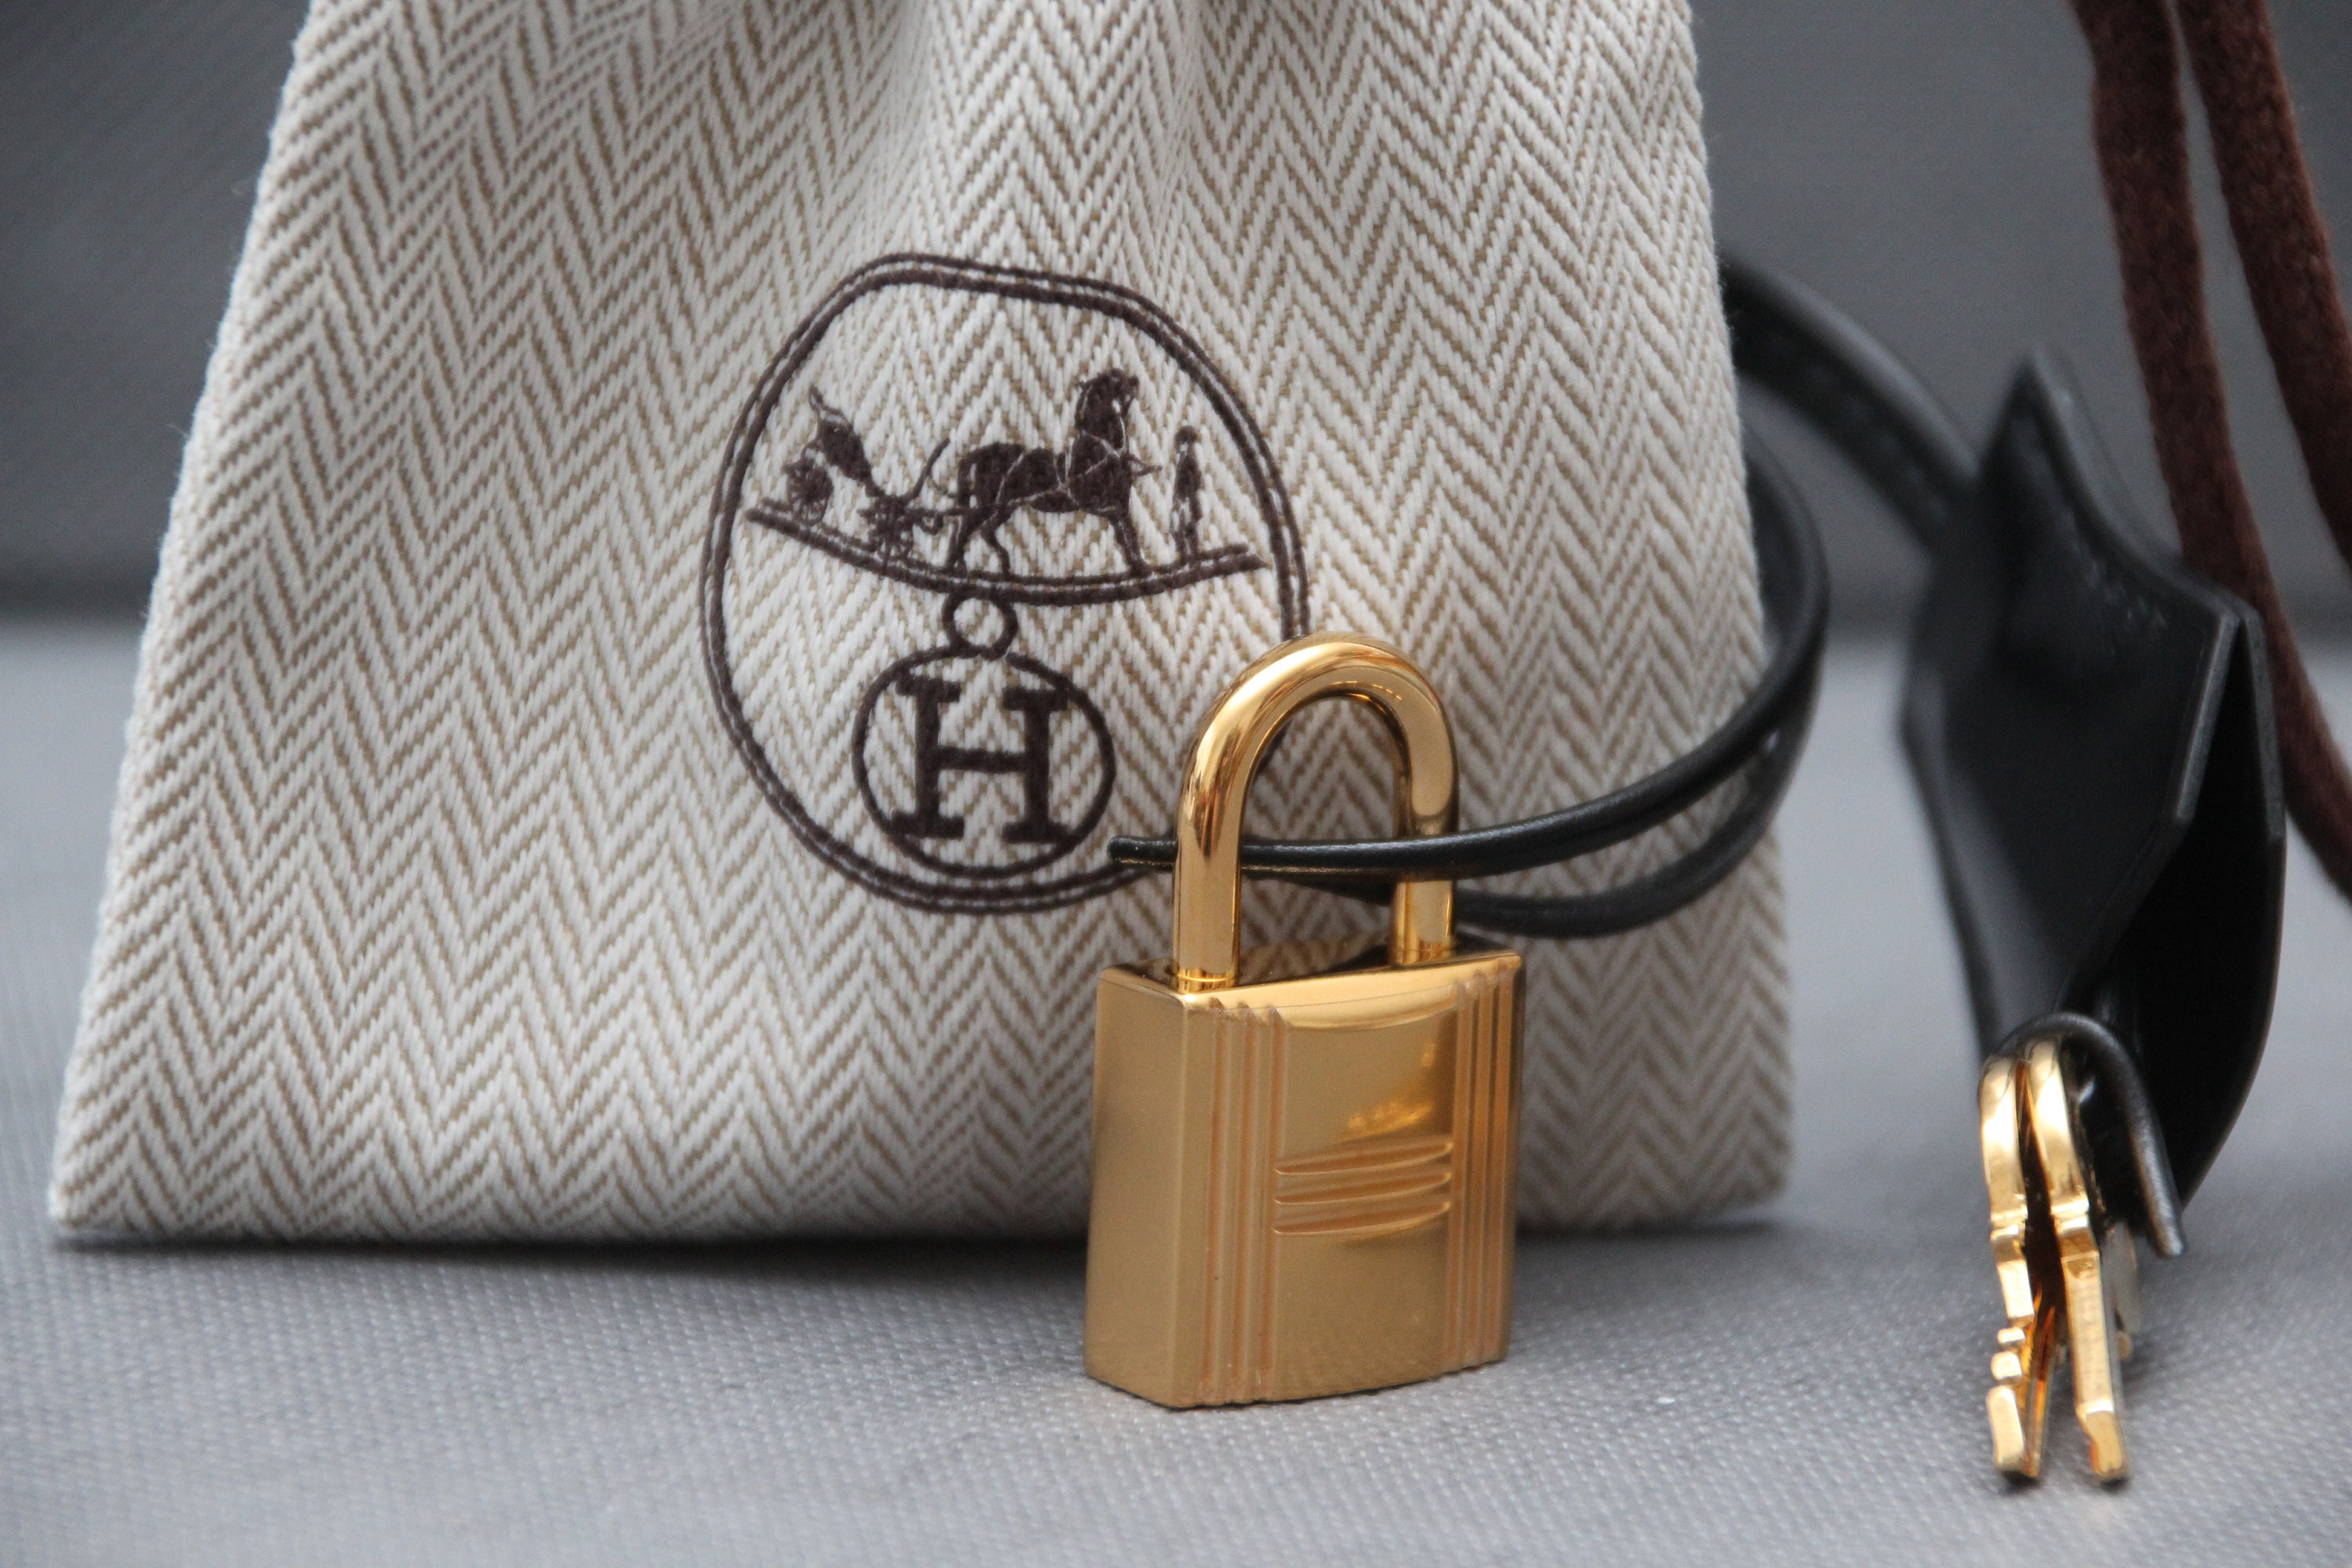 A black birkin bag with gold details by Hermes and black slides